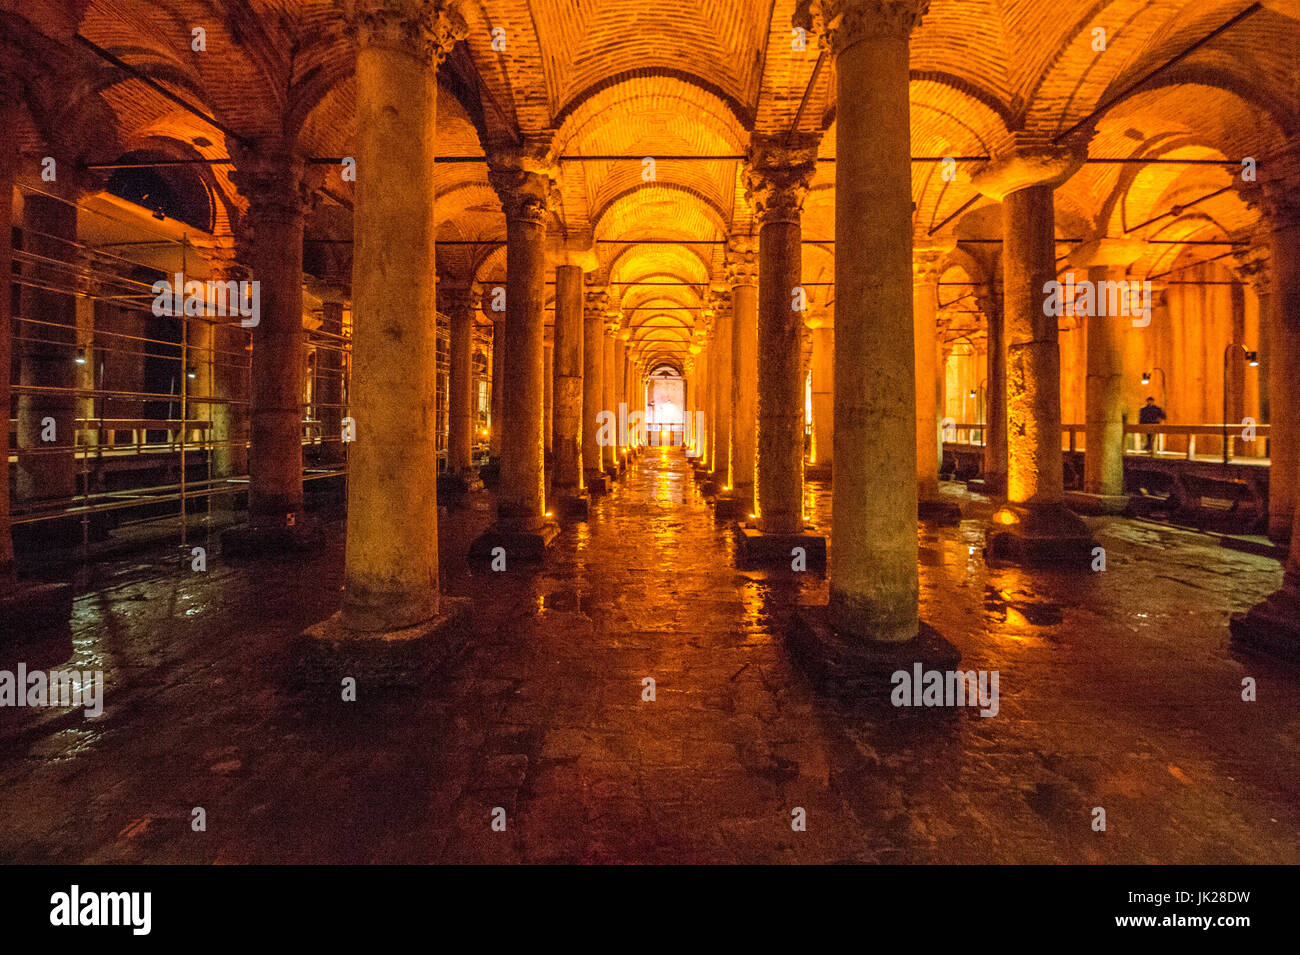 Die Basilika-Zisterne Wald von antiken Säulen, befindet sich in Istanbul, Türkei. Stockfoto